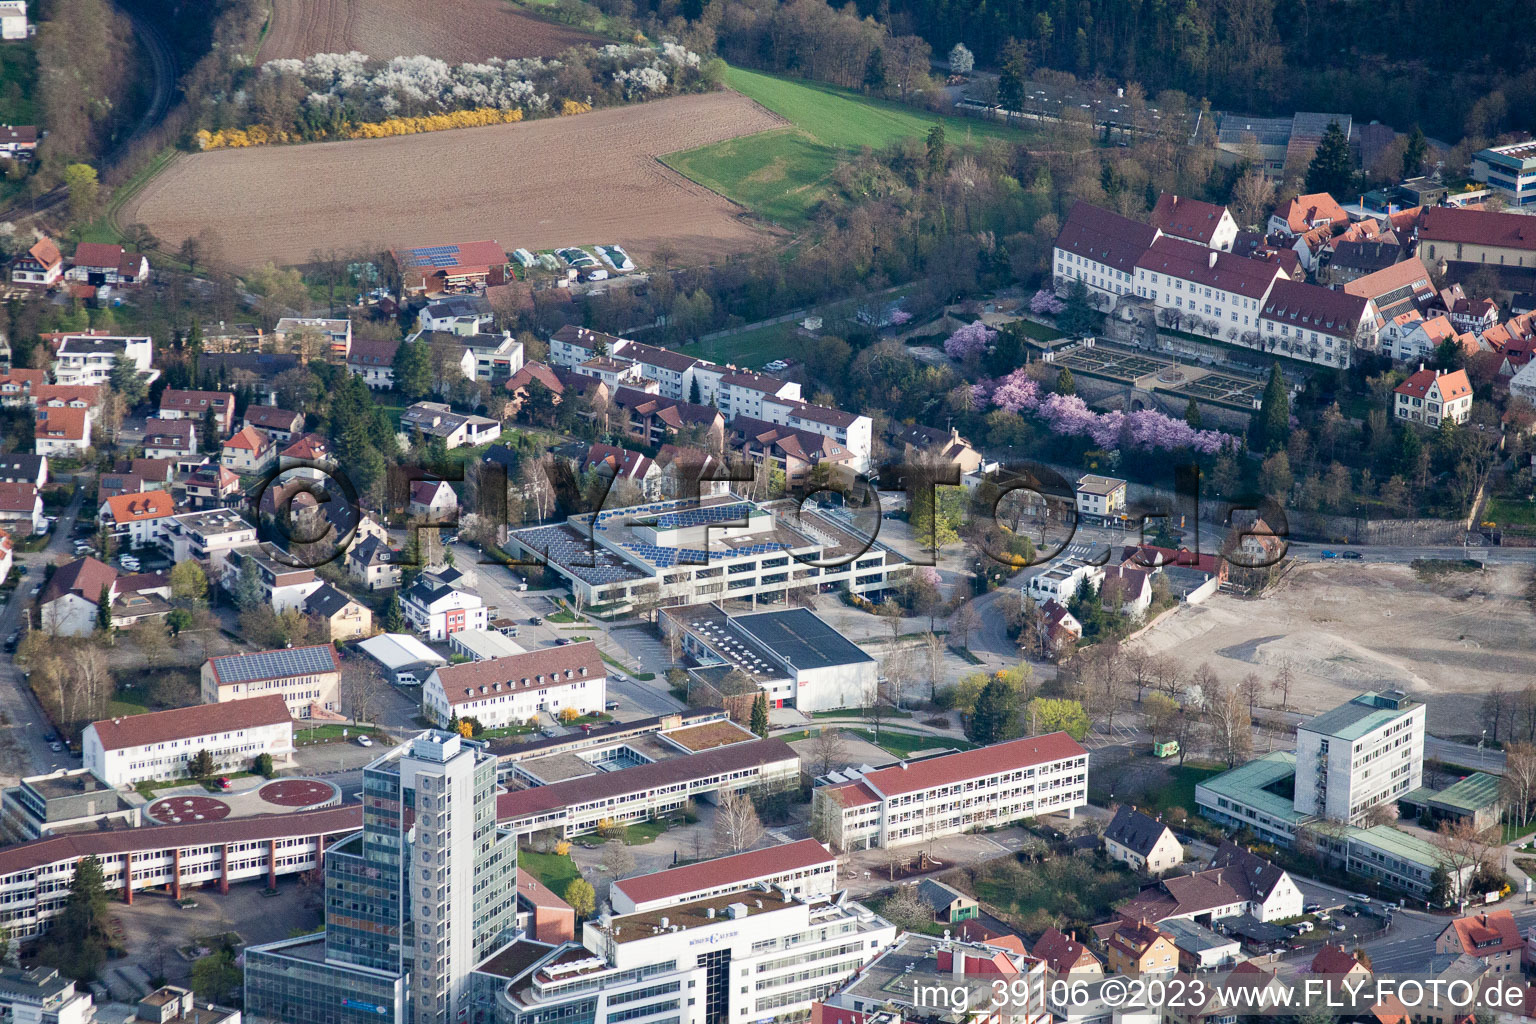 Johannes-Kepler-Gymnasium, Lindenstr in Leonberg im Bundesland Baden-Württemberg, Deutschland aus der Luft betrachtet